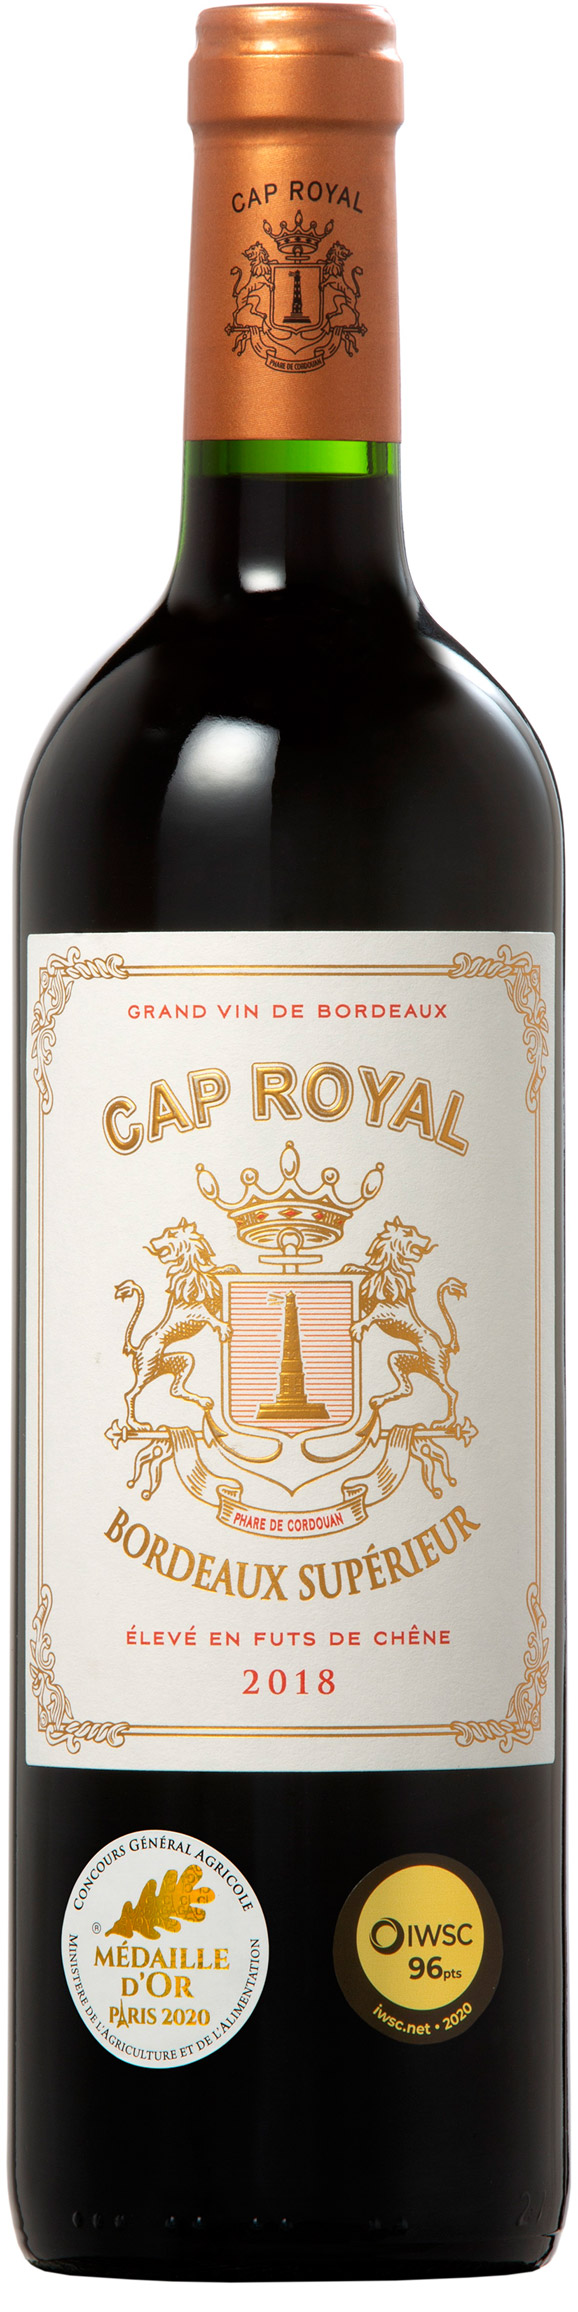 Cap Royal Bordeaux Supérieur rouge 2018